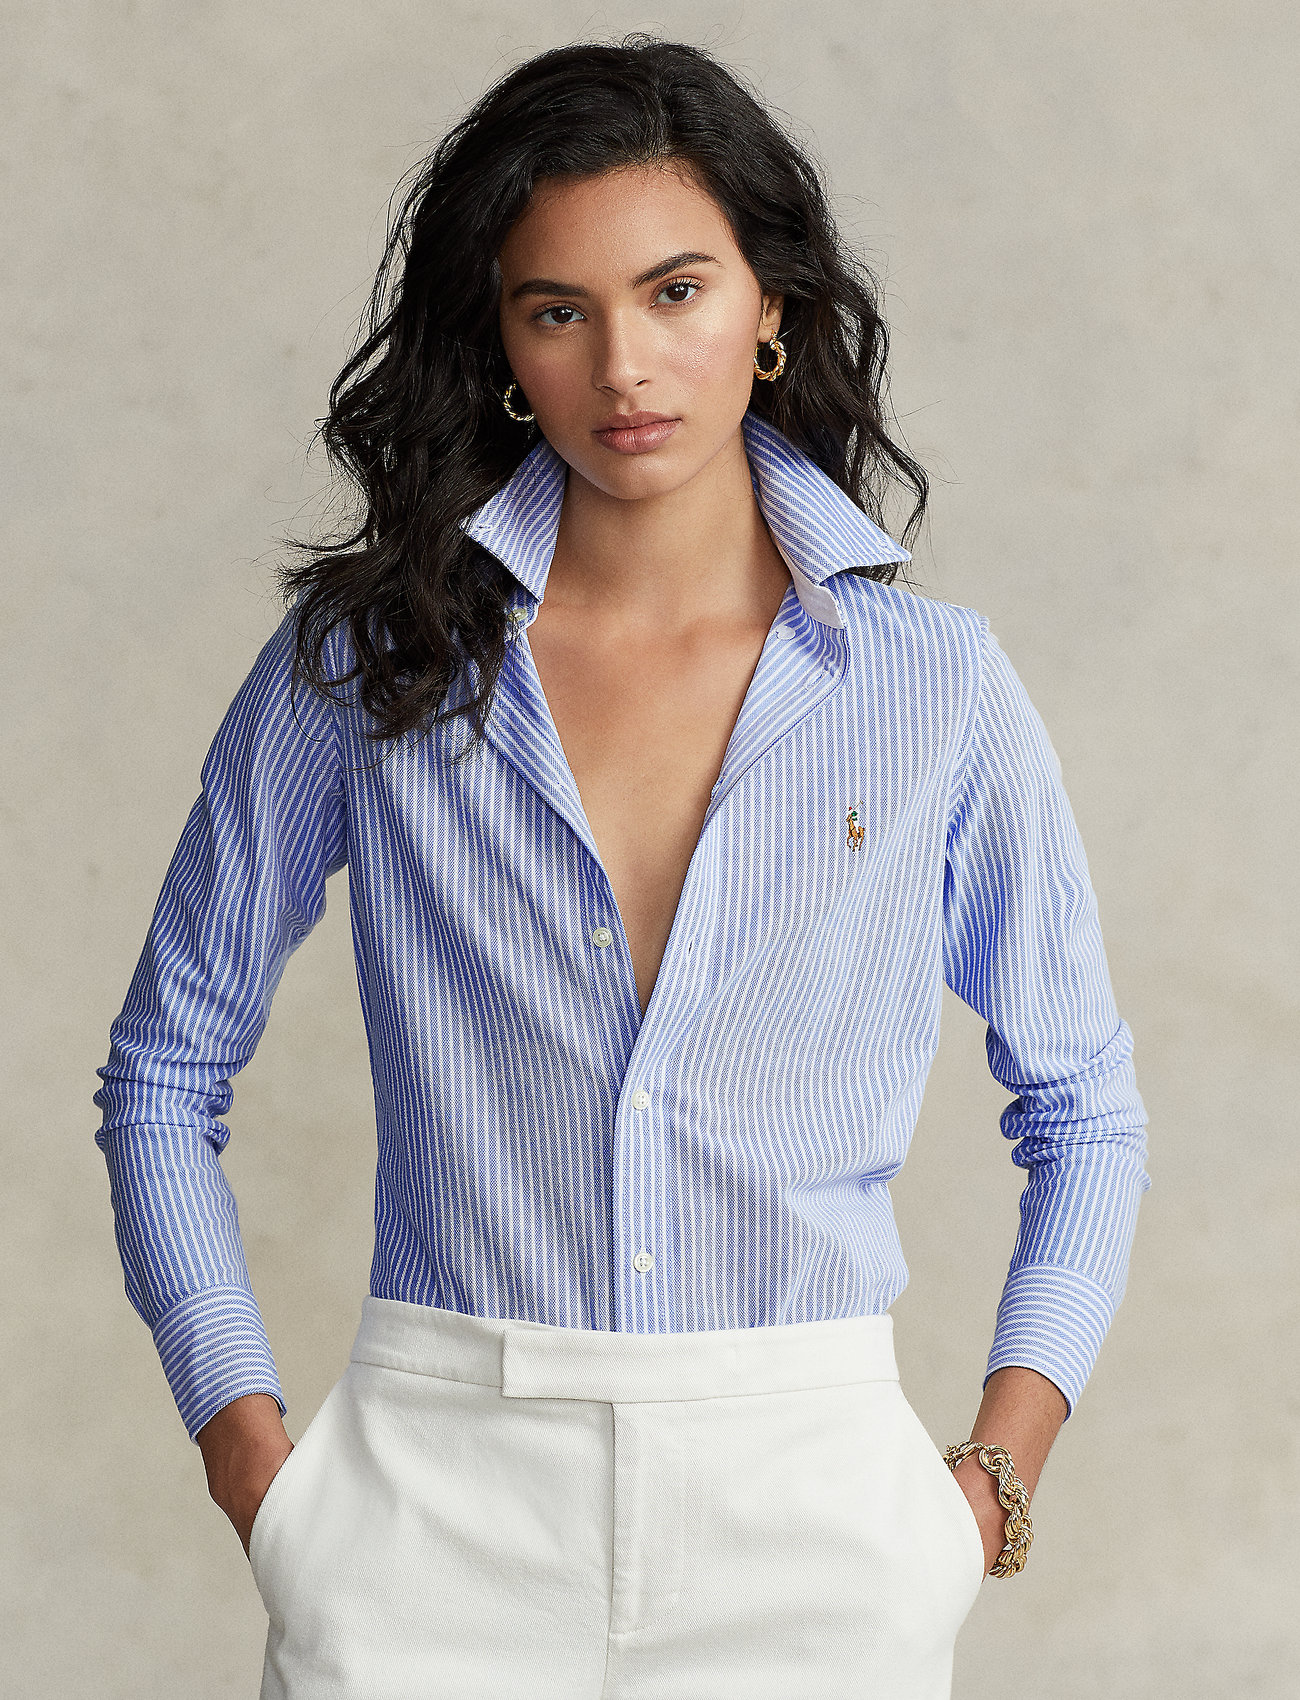 Polo Ralph Lauren - Striped Knit Oxford Shirt - koszule z długimi rękawami - harbor island blue - 0